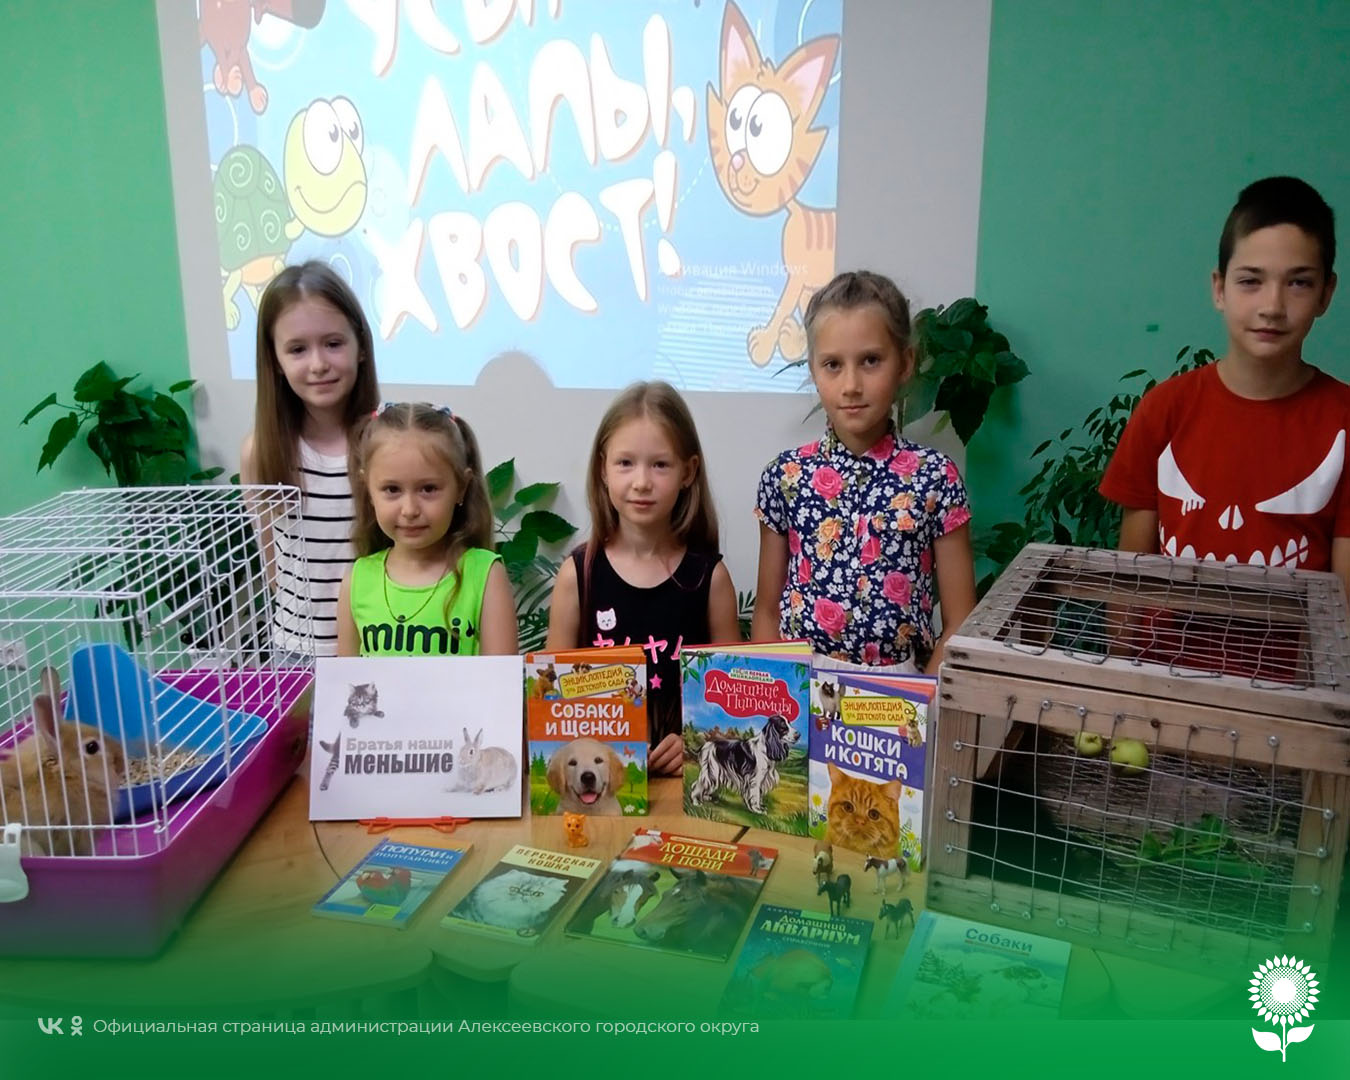 В городской детской модельной библиотеке №4 состоялся экологический шоу - конкурс «Вот компания какая».